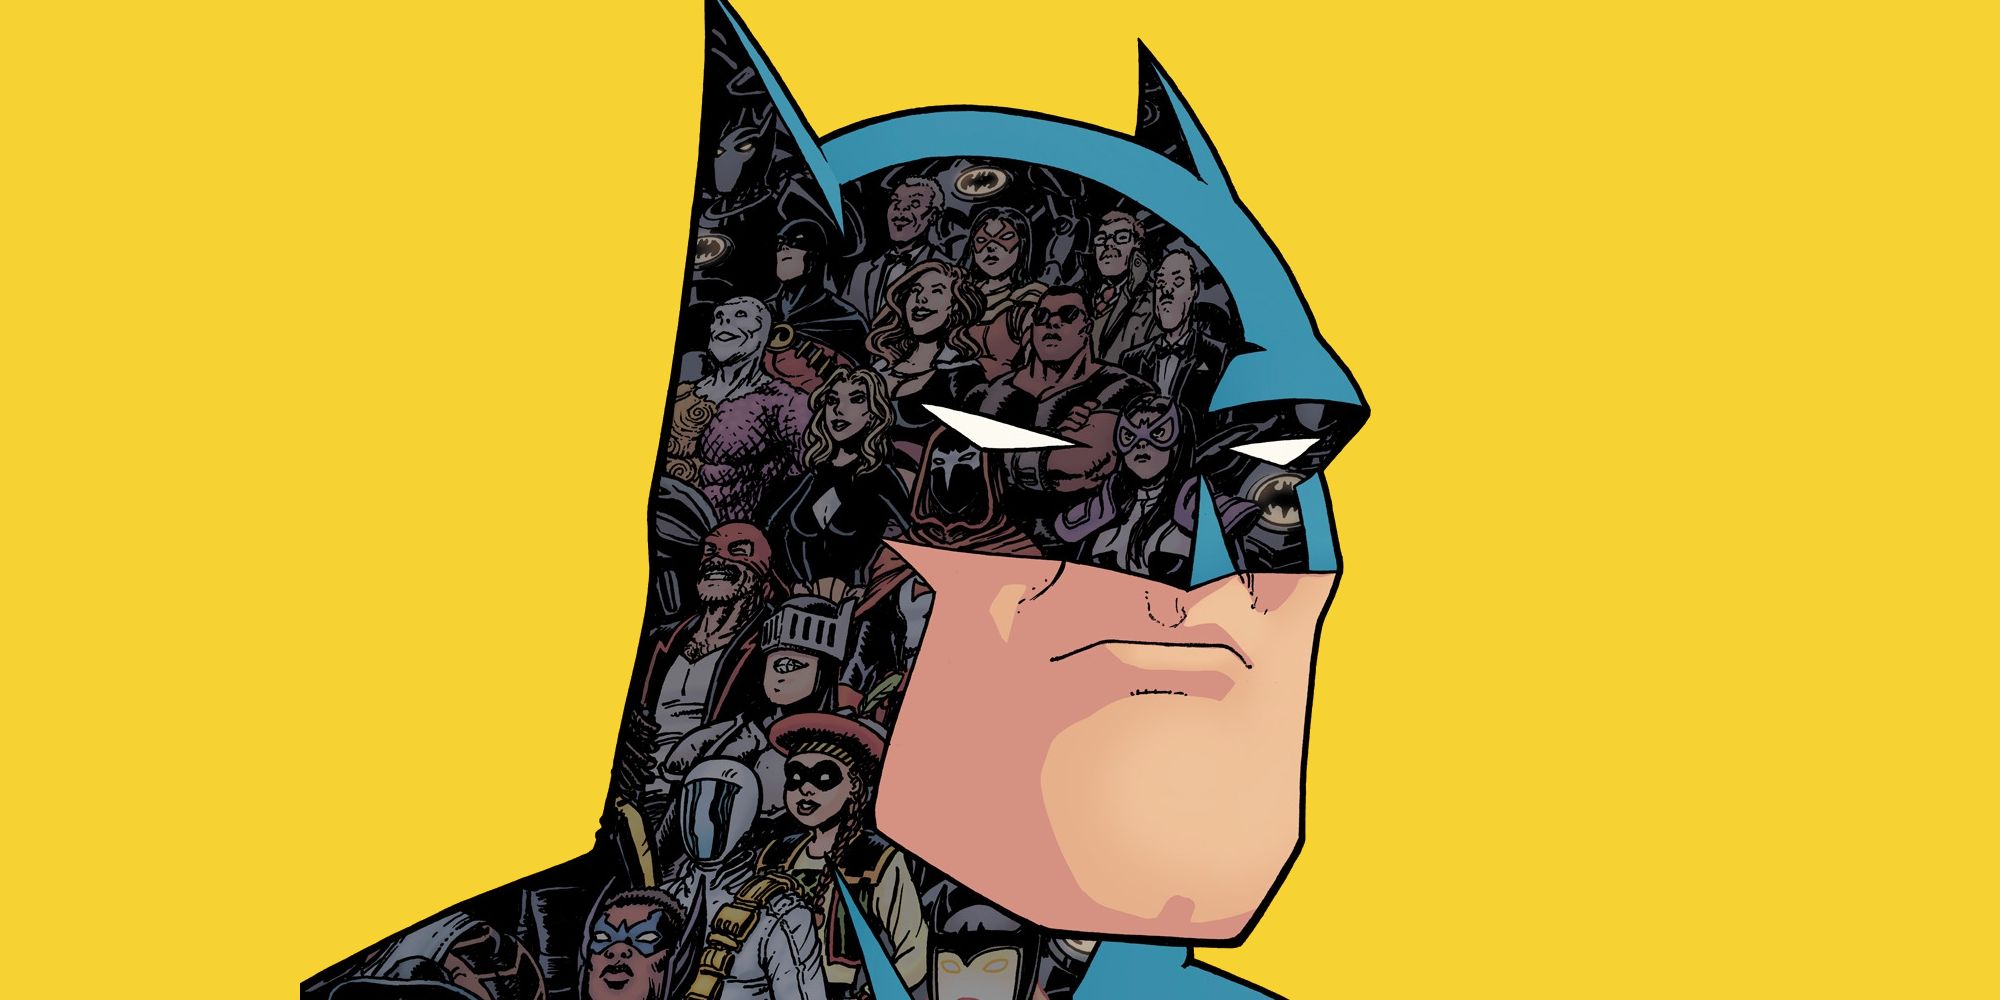 Sztuka komiksowa: Batman marszczy brwi na żółtym tle. Kilka postaci z Bat-Family pojawia się jako odbicia w jego kapturze.